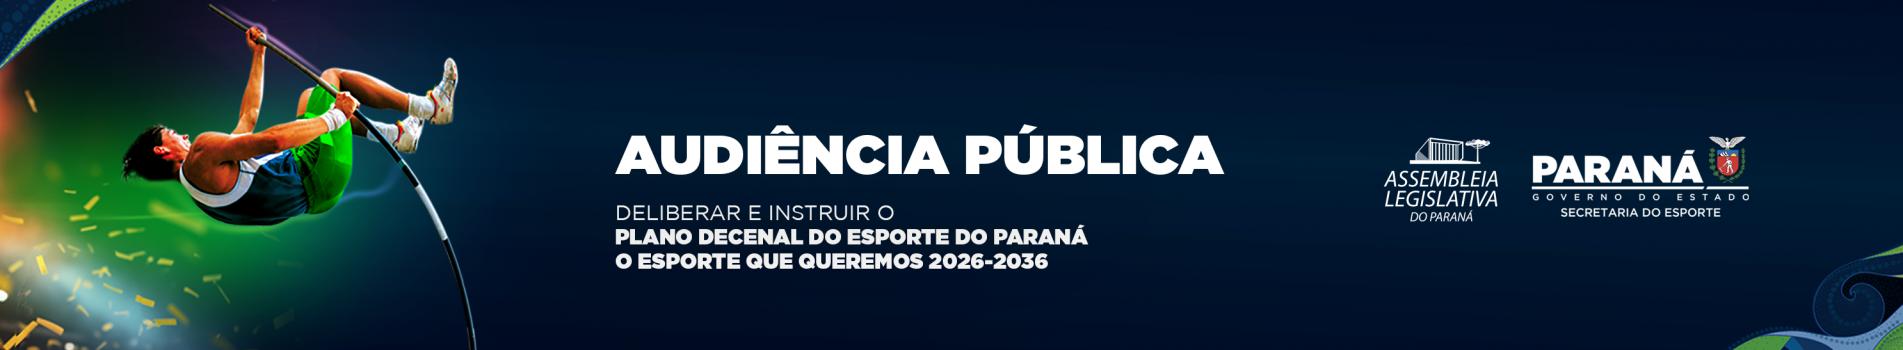 Plano Decenal do Esporte do Paraná